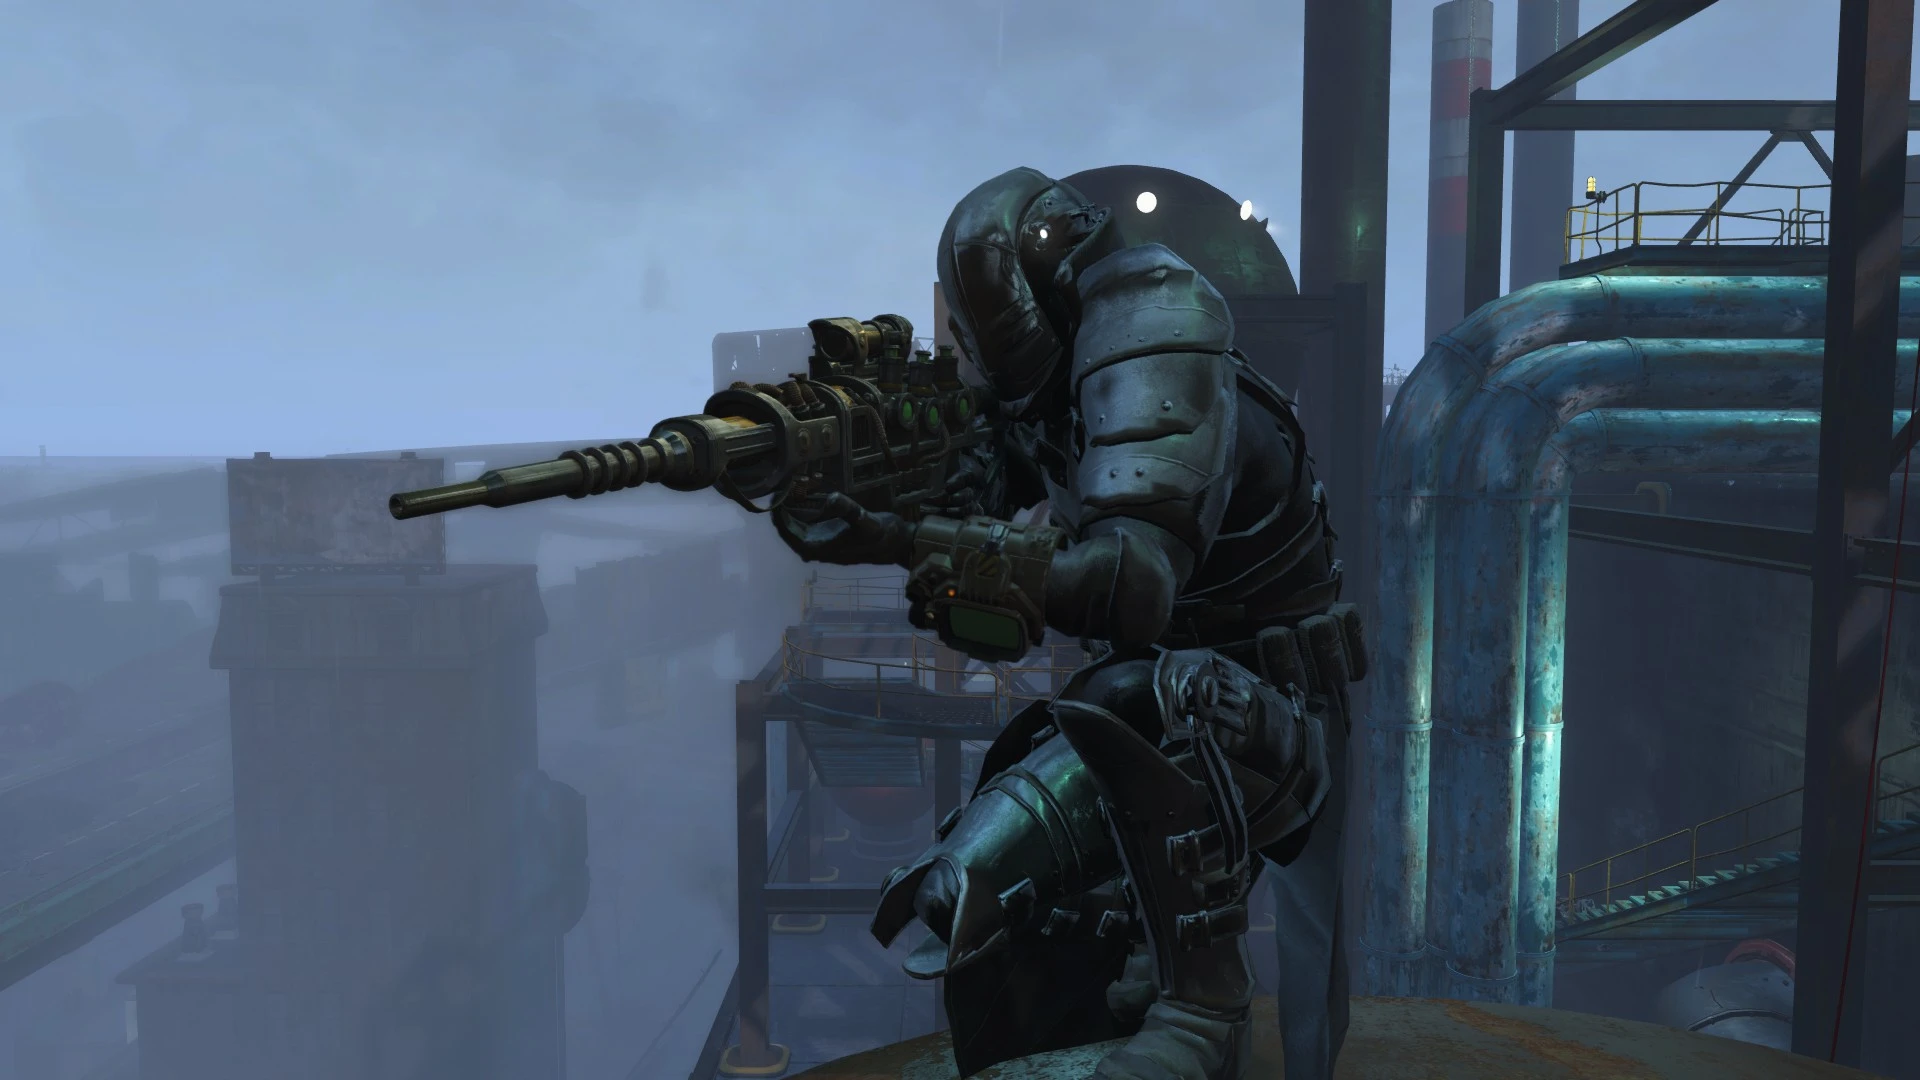 Fallout 4 Heavy Institute Armor Corpus Praesidium